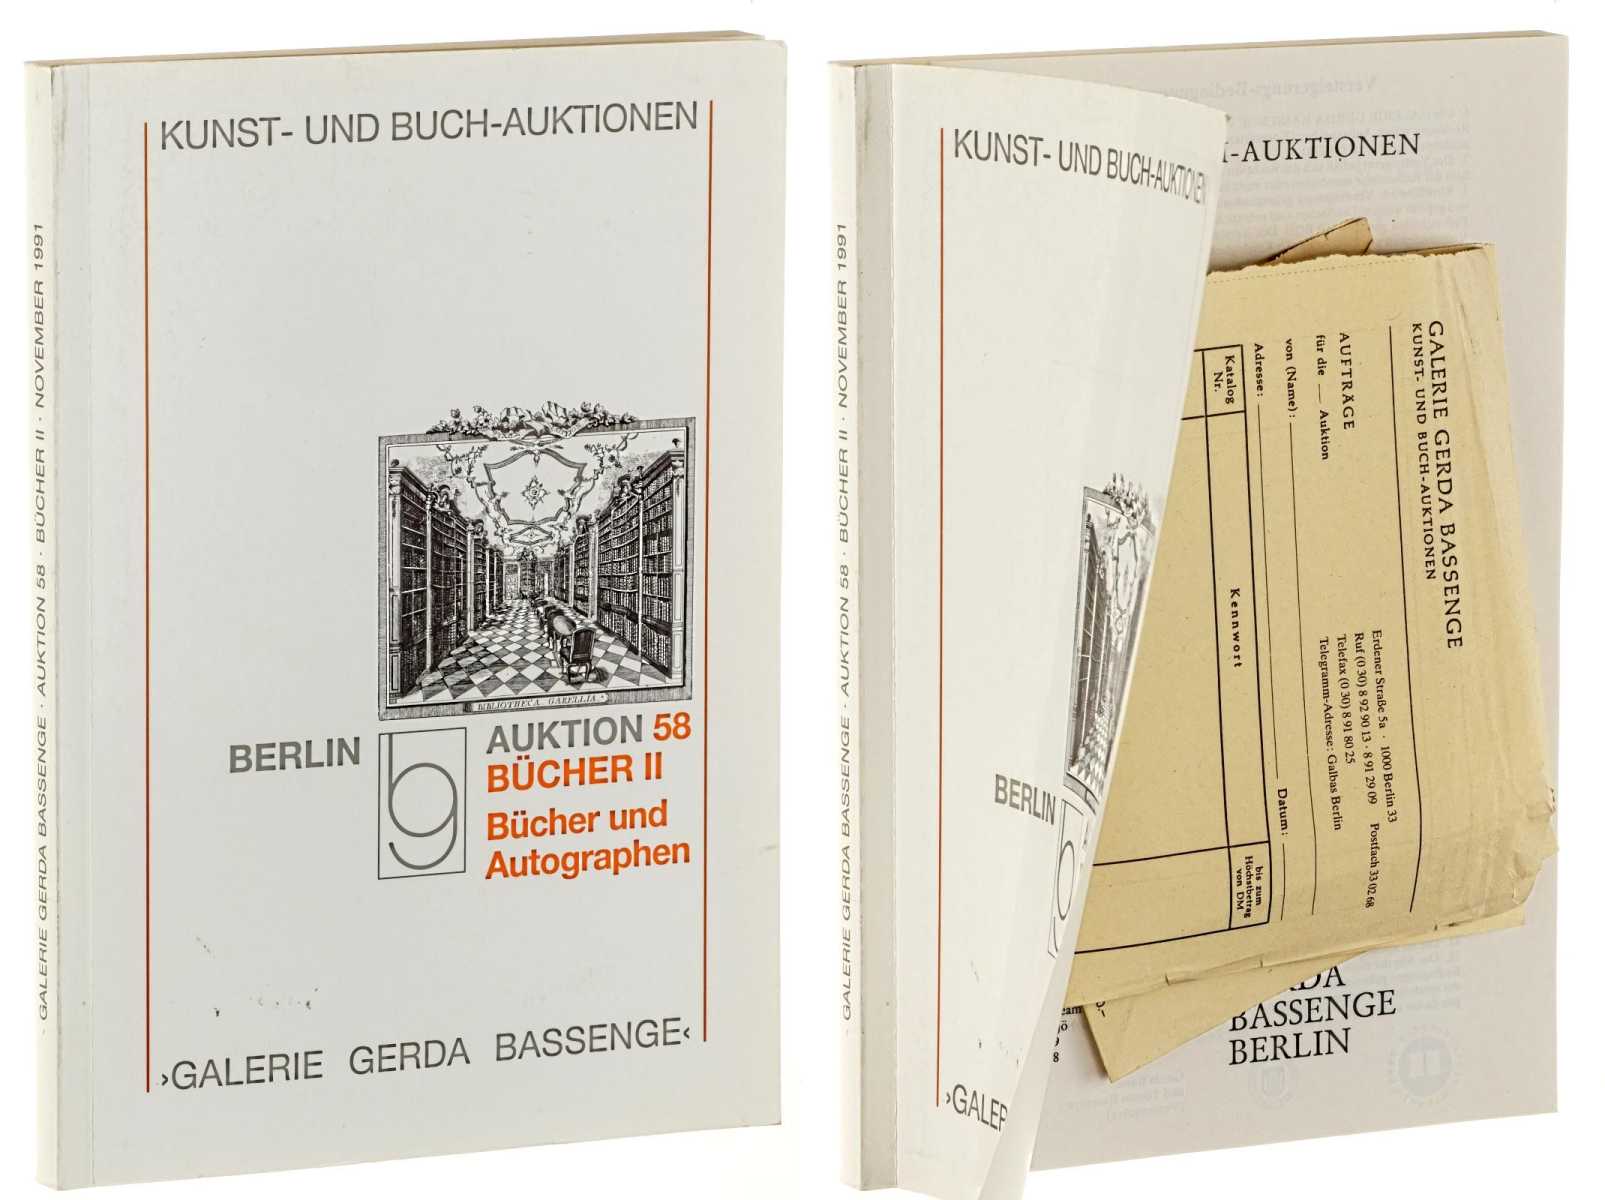 Galerie Gerda Bassenge Berlin:  Auktion 58: Bücher II: Bücher und Autographen. Musik, Tanz, Theater Literatur und Buchillustrationen des 17.-19. Jahrhunderts, Autographen. 15. Nov. 1991. 